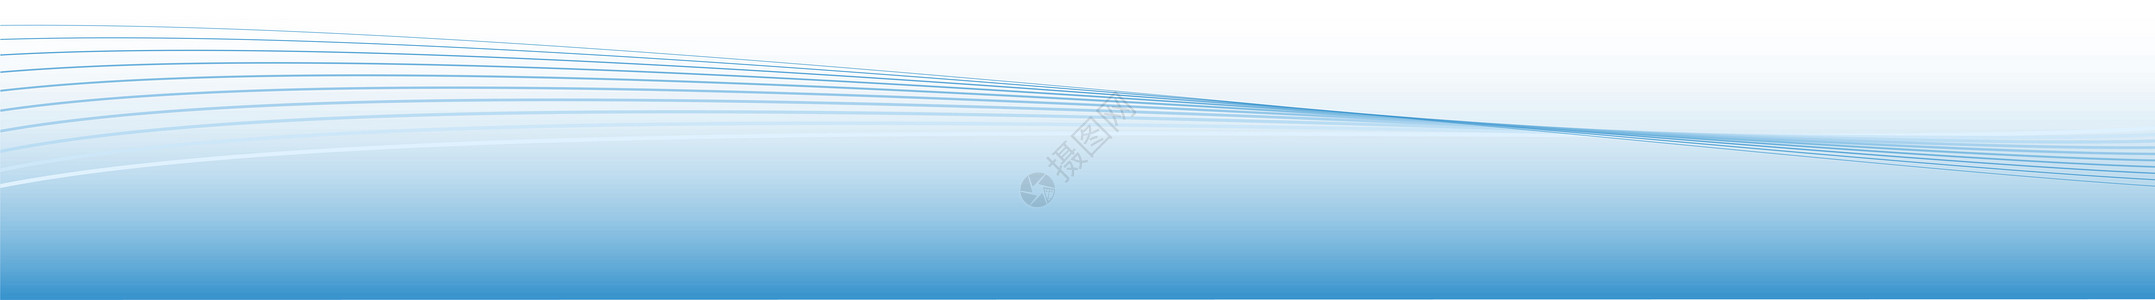 蓝色能源浪潮丝带活力海浪波浪空白曲线插图横幅剪贴背景图片